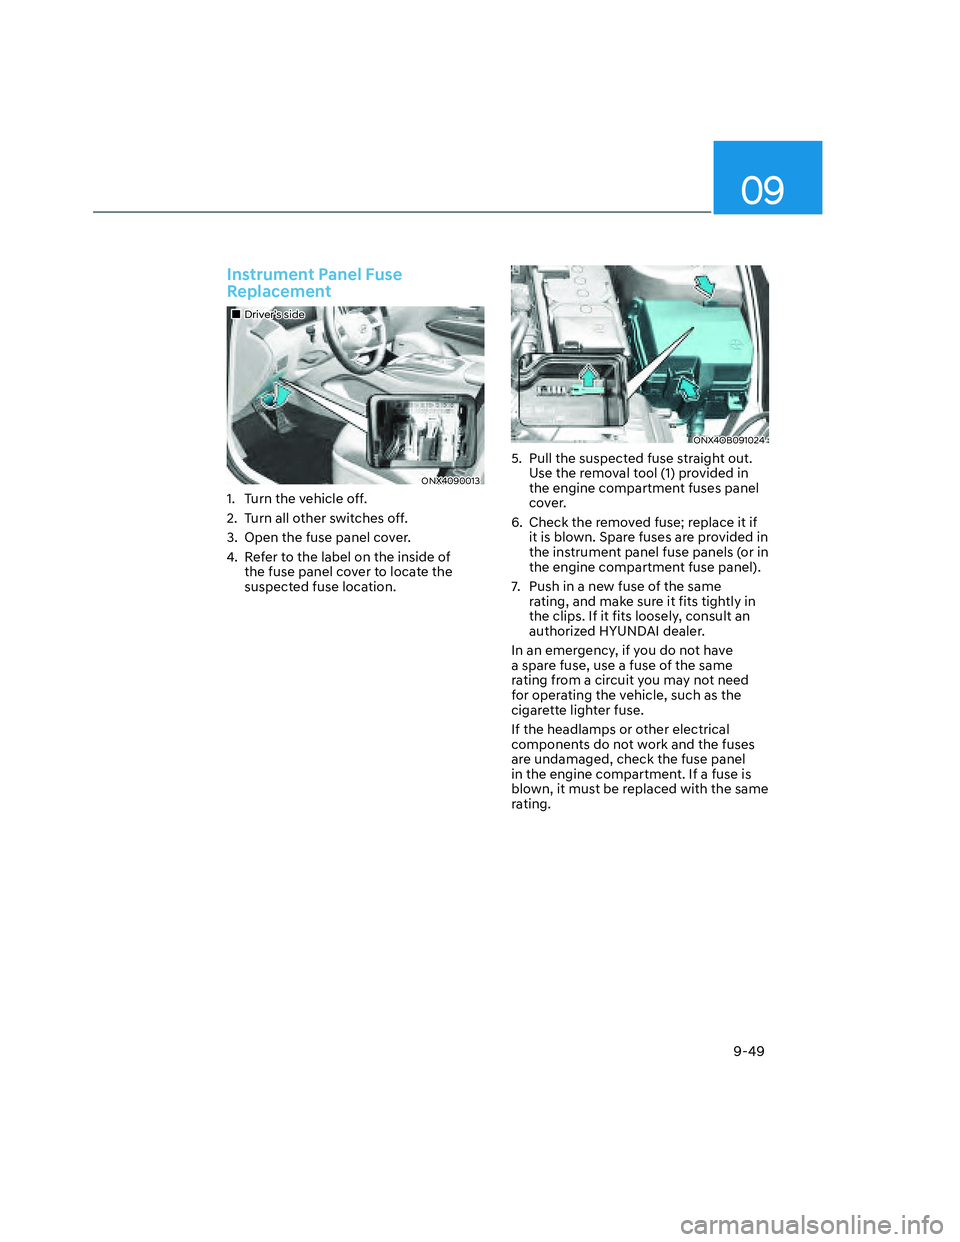 HYUNDAI SANTA CRUZ 2022  Owners Manual 09
9-49
Instrument Panel Fuse 
Replacement
���„�„Driver’s sideDriver’s side
ONX4090013ONX4090013
1.  Turn the vehicle off.
2.  Turn all other switches off.
3.  Open the fuse panel cover.
4. 